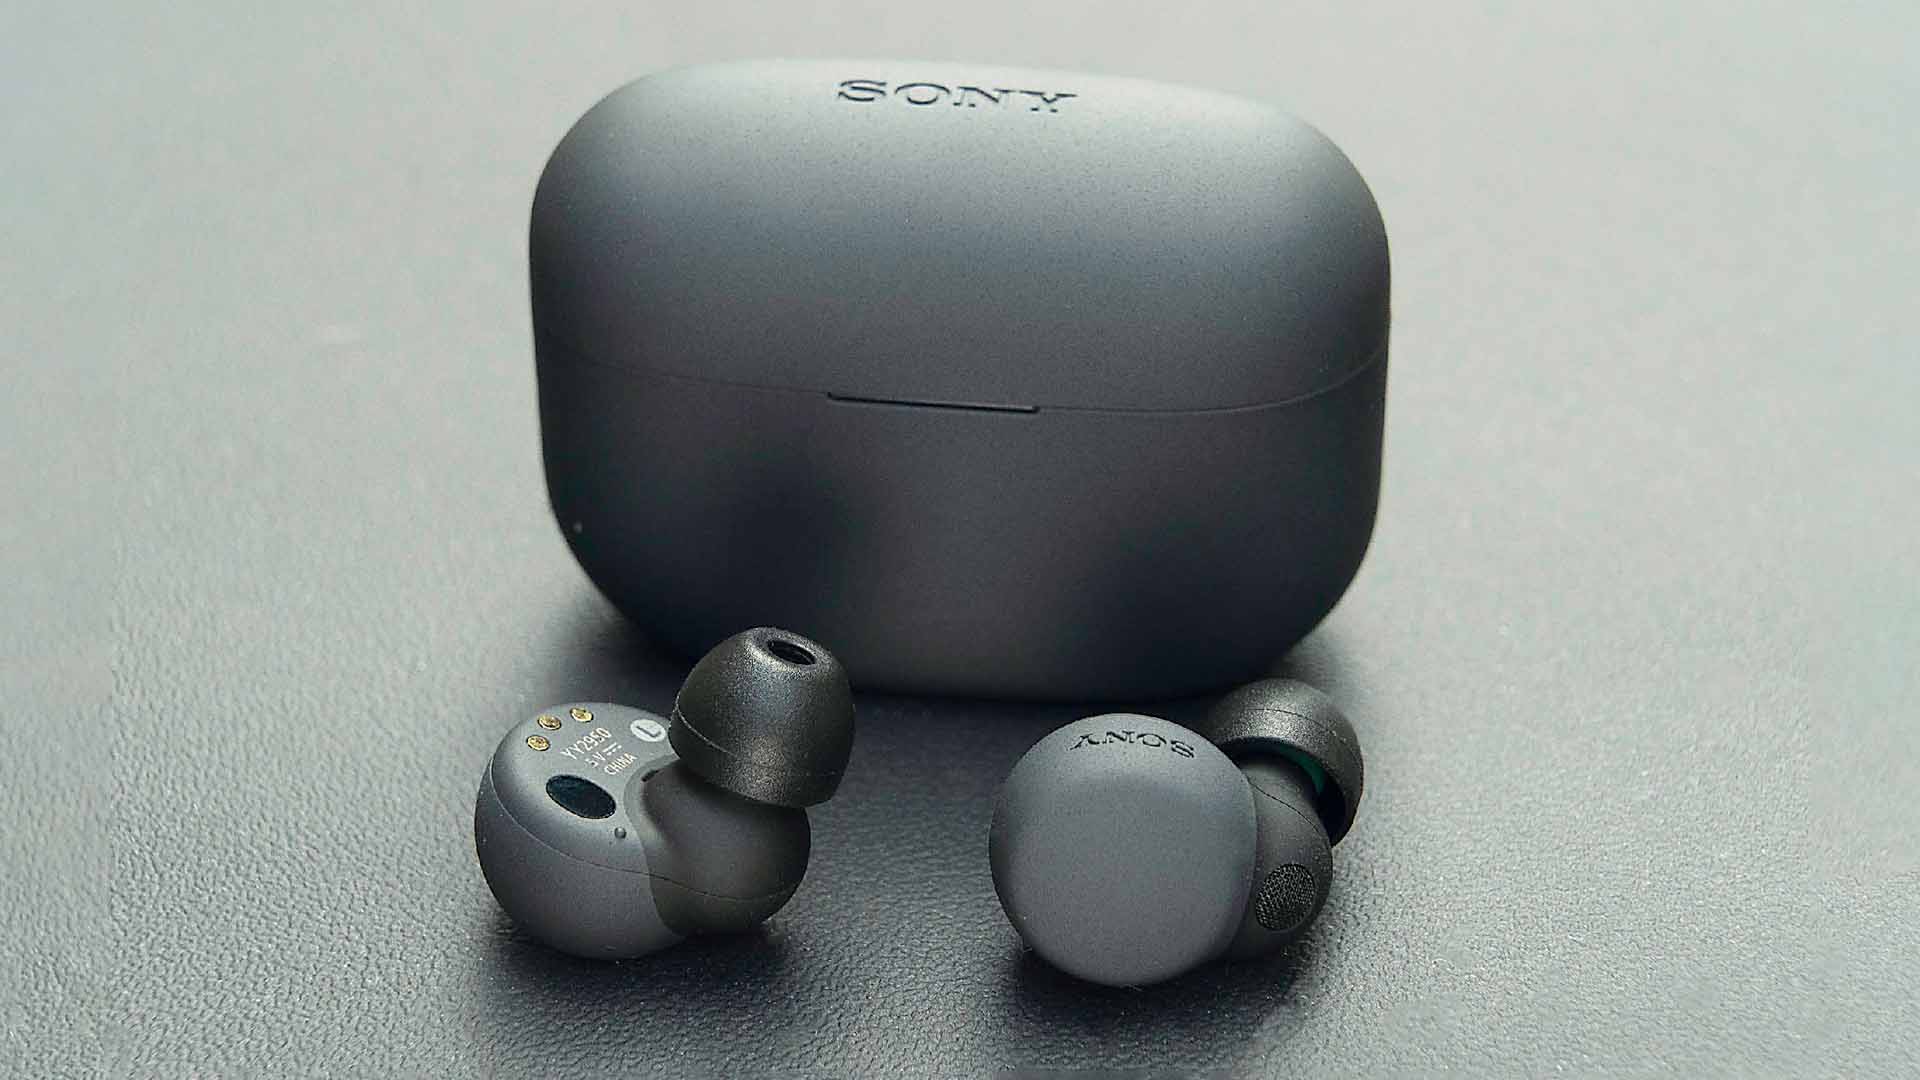 Sony's LinkBuds S earbuds.